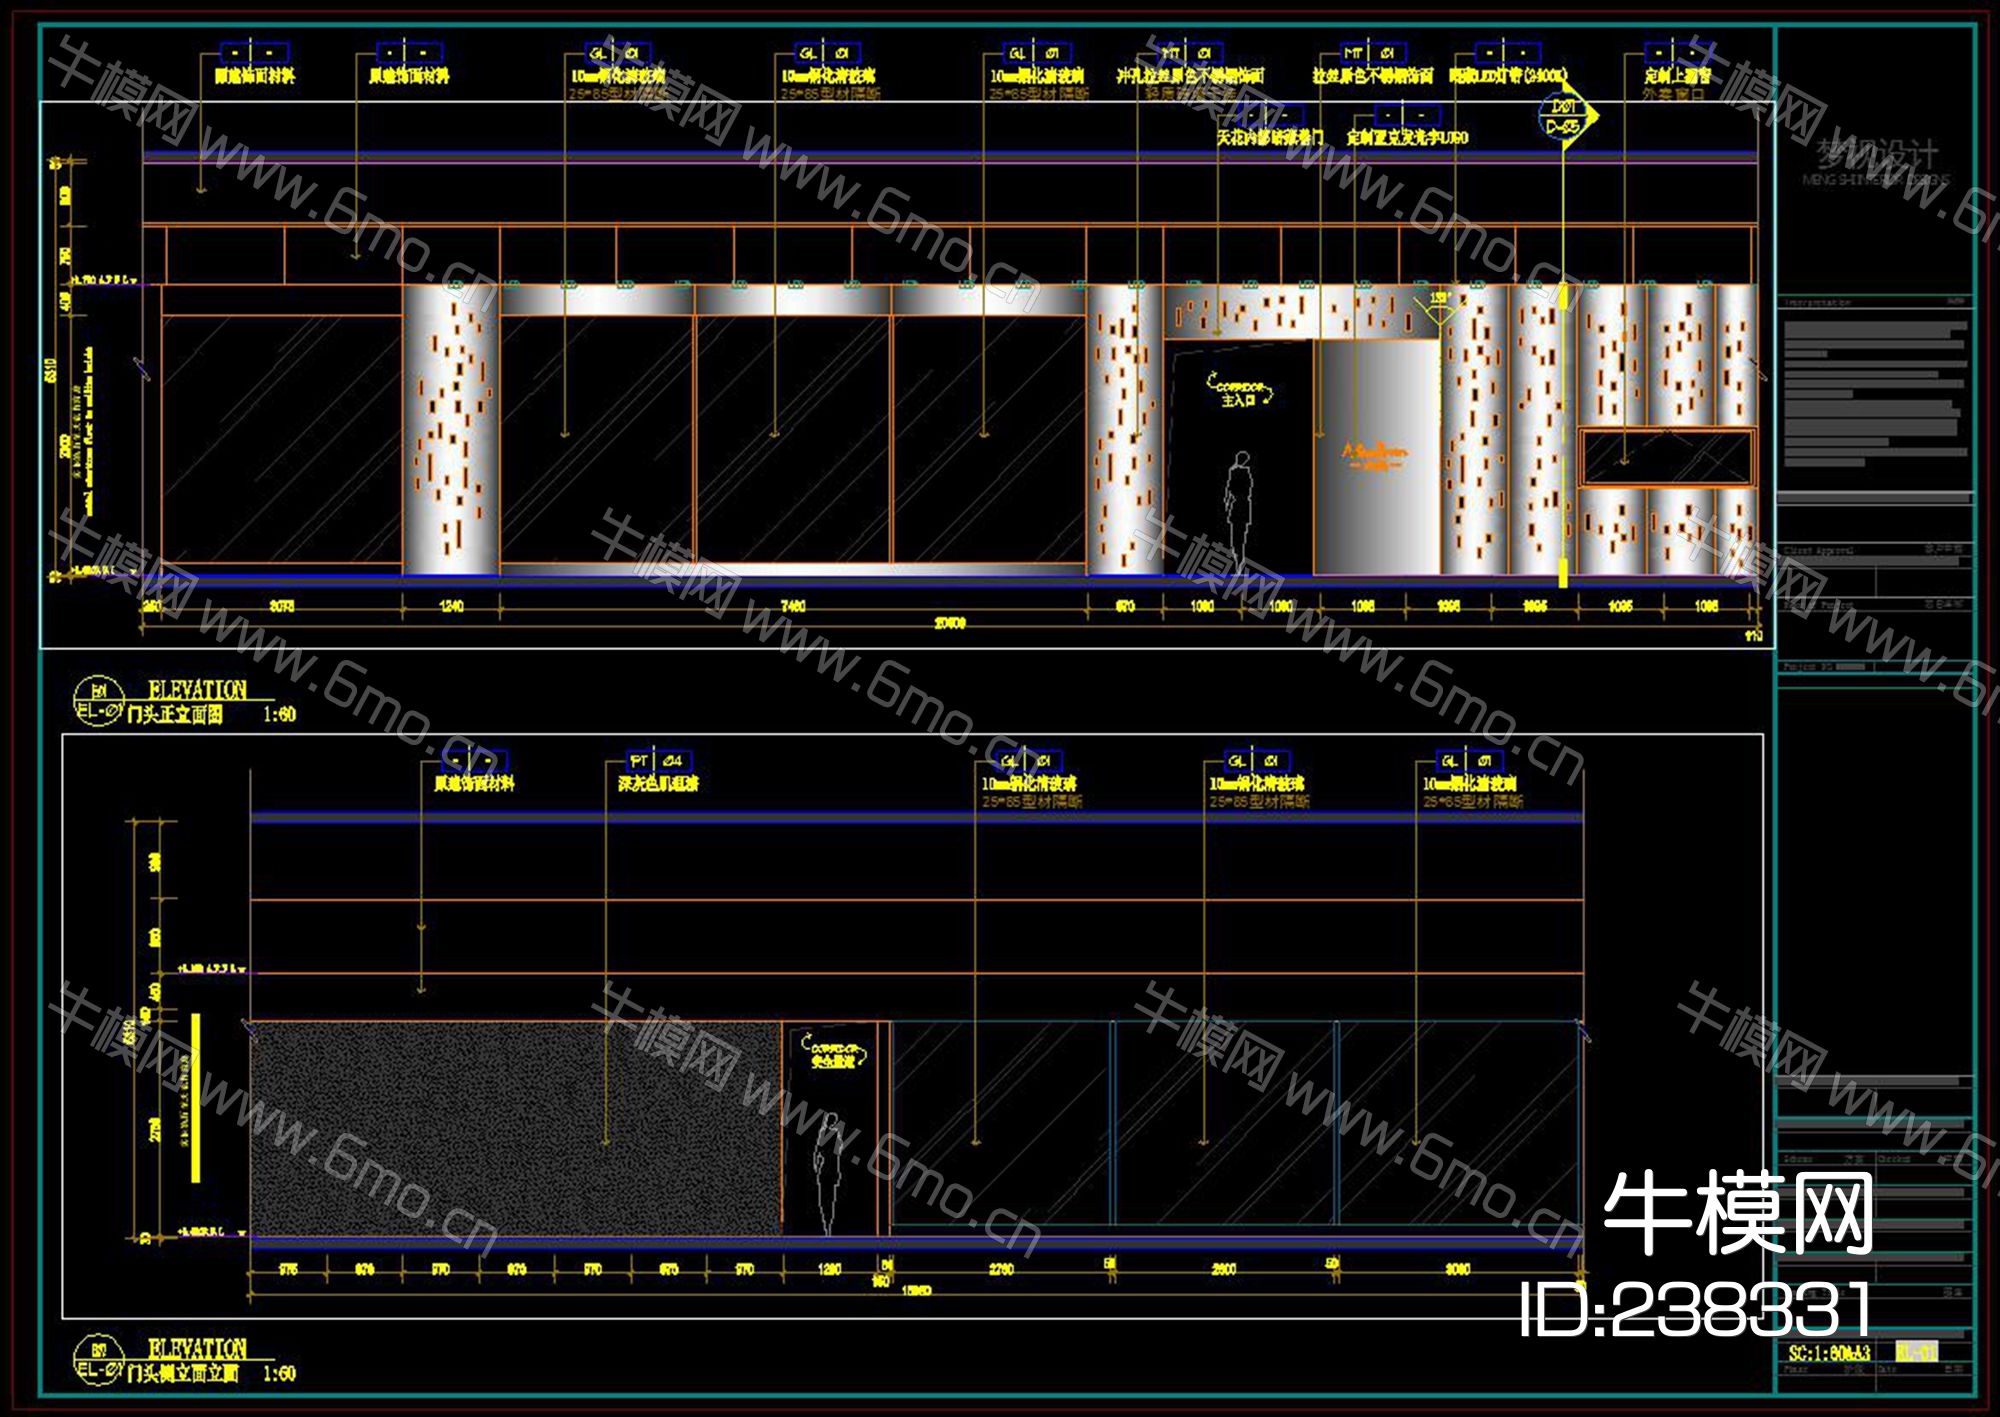 上海九麸音乐餐厅CAD施工图效果图